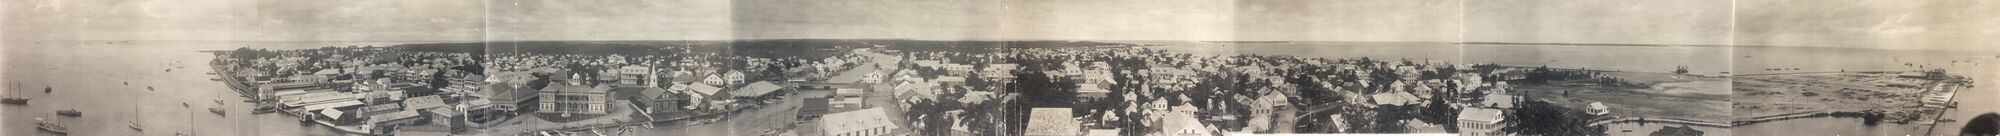 Панорама столицы колонии в 1914 году